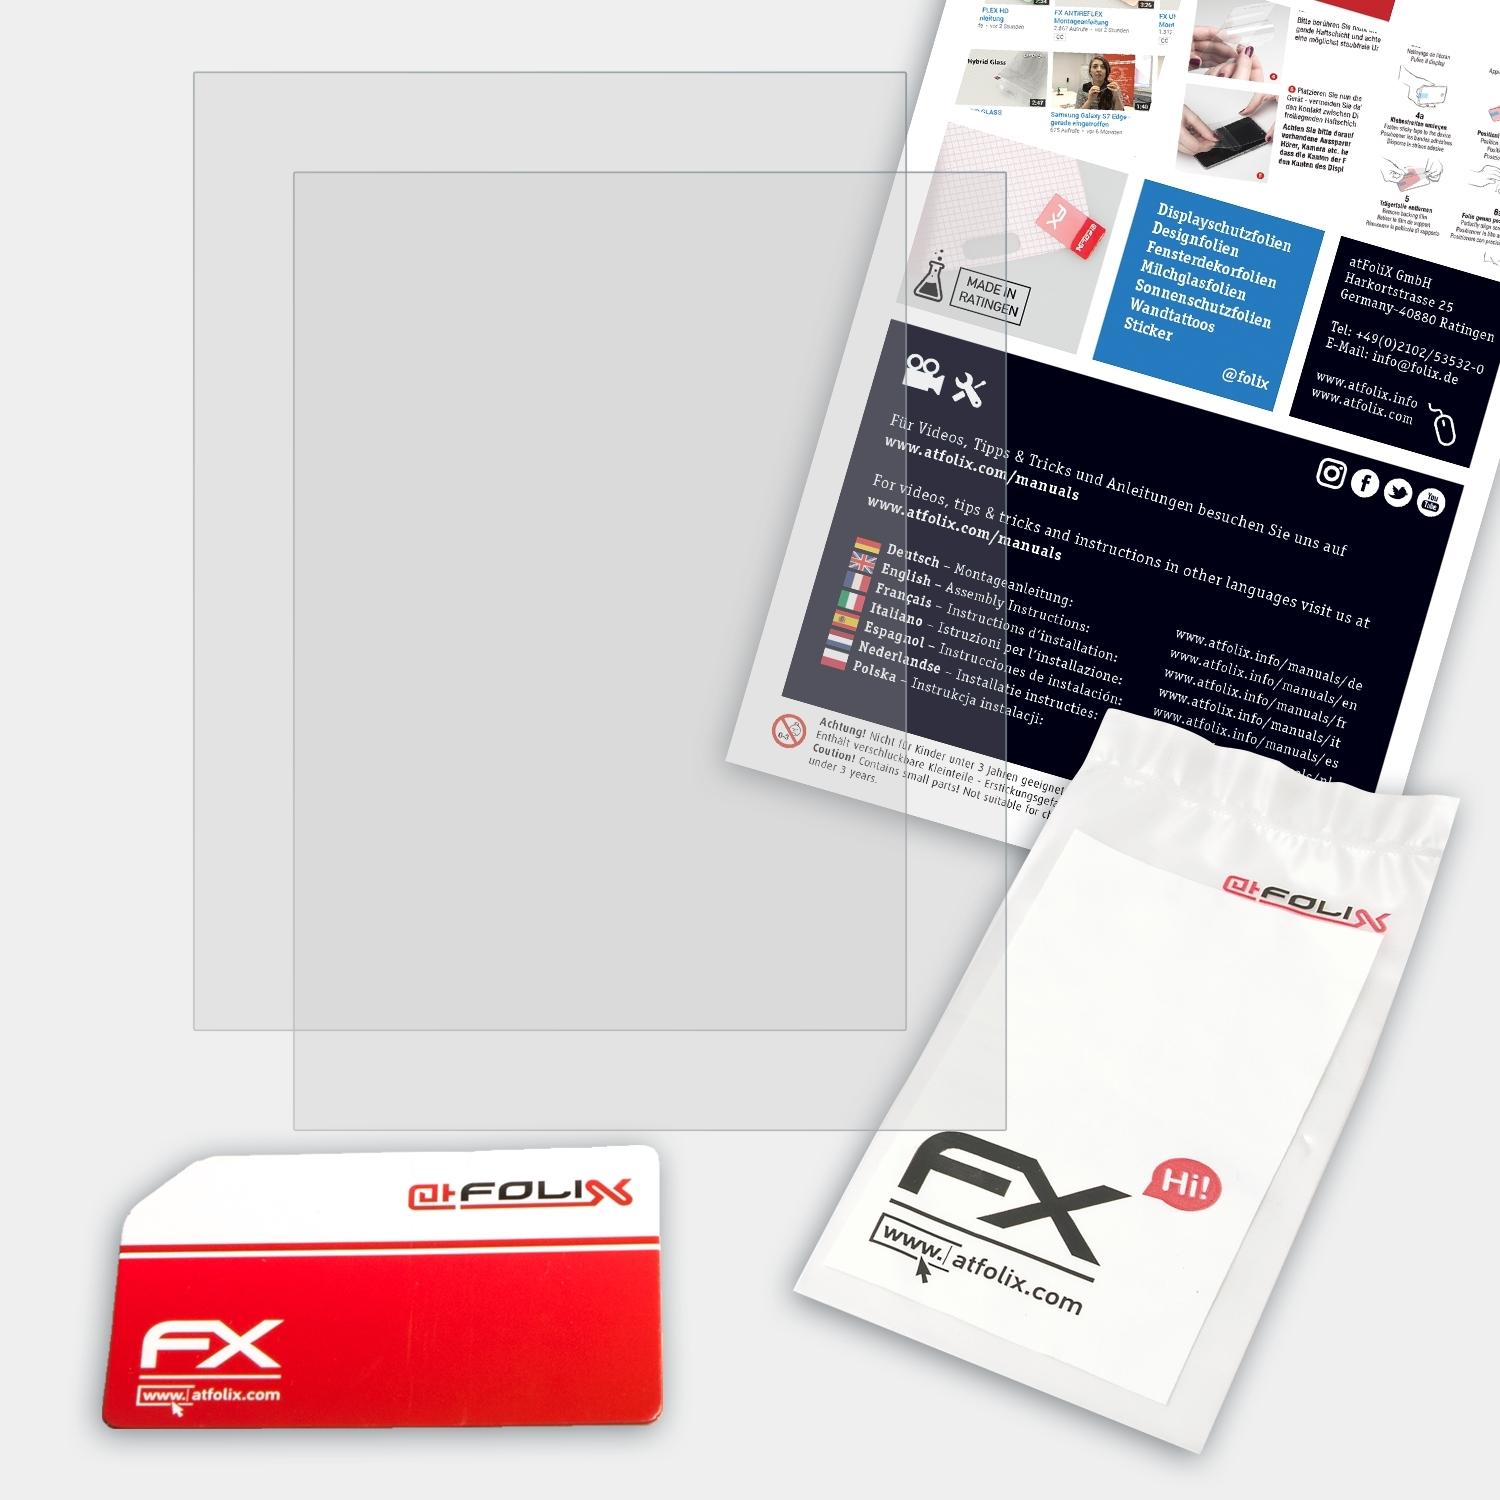 Displayschutz(für 2x ATFOLIX FX-Antireflex InkPad PocketBook 3)